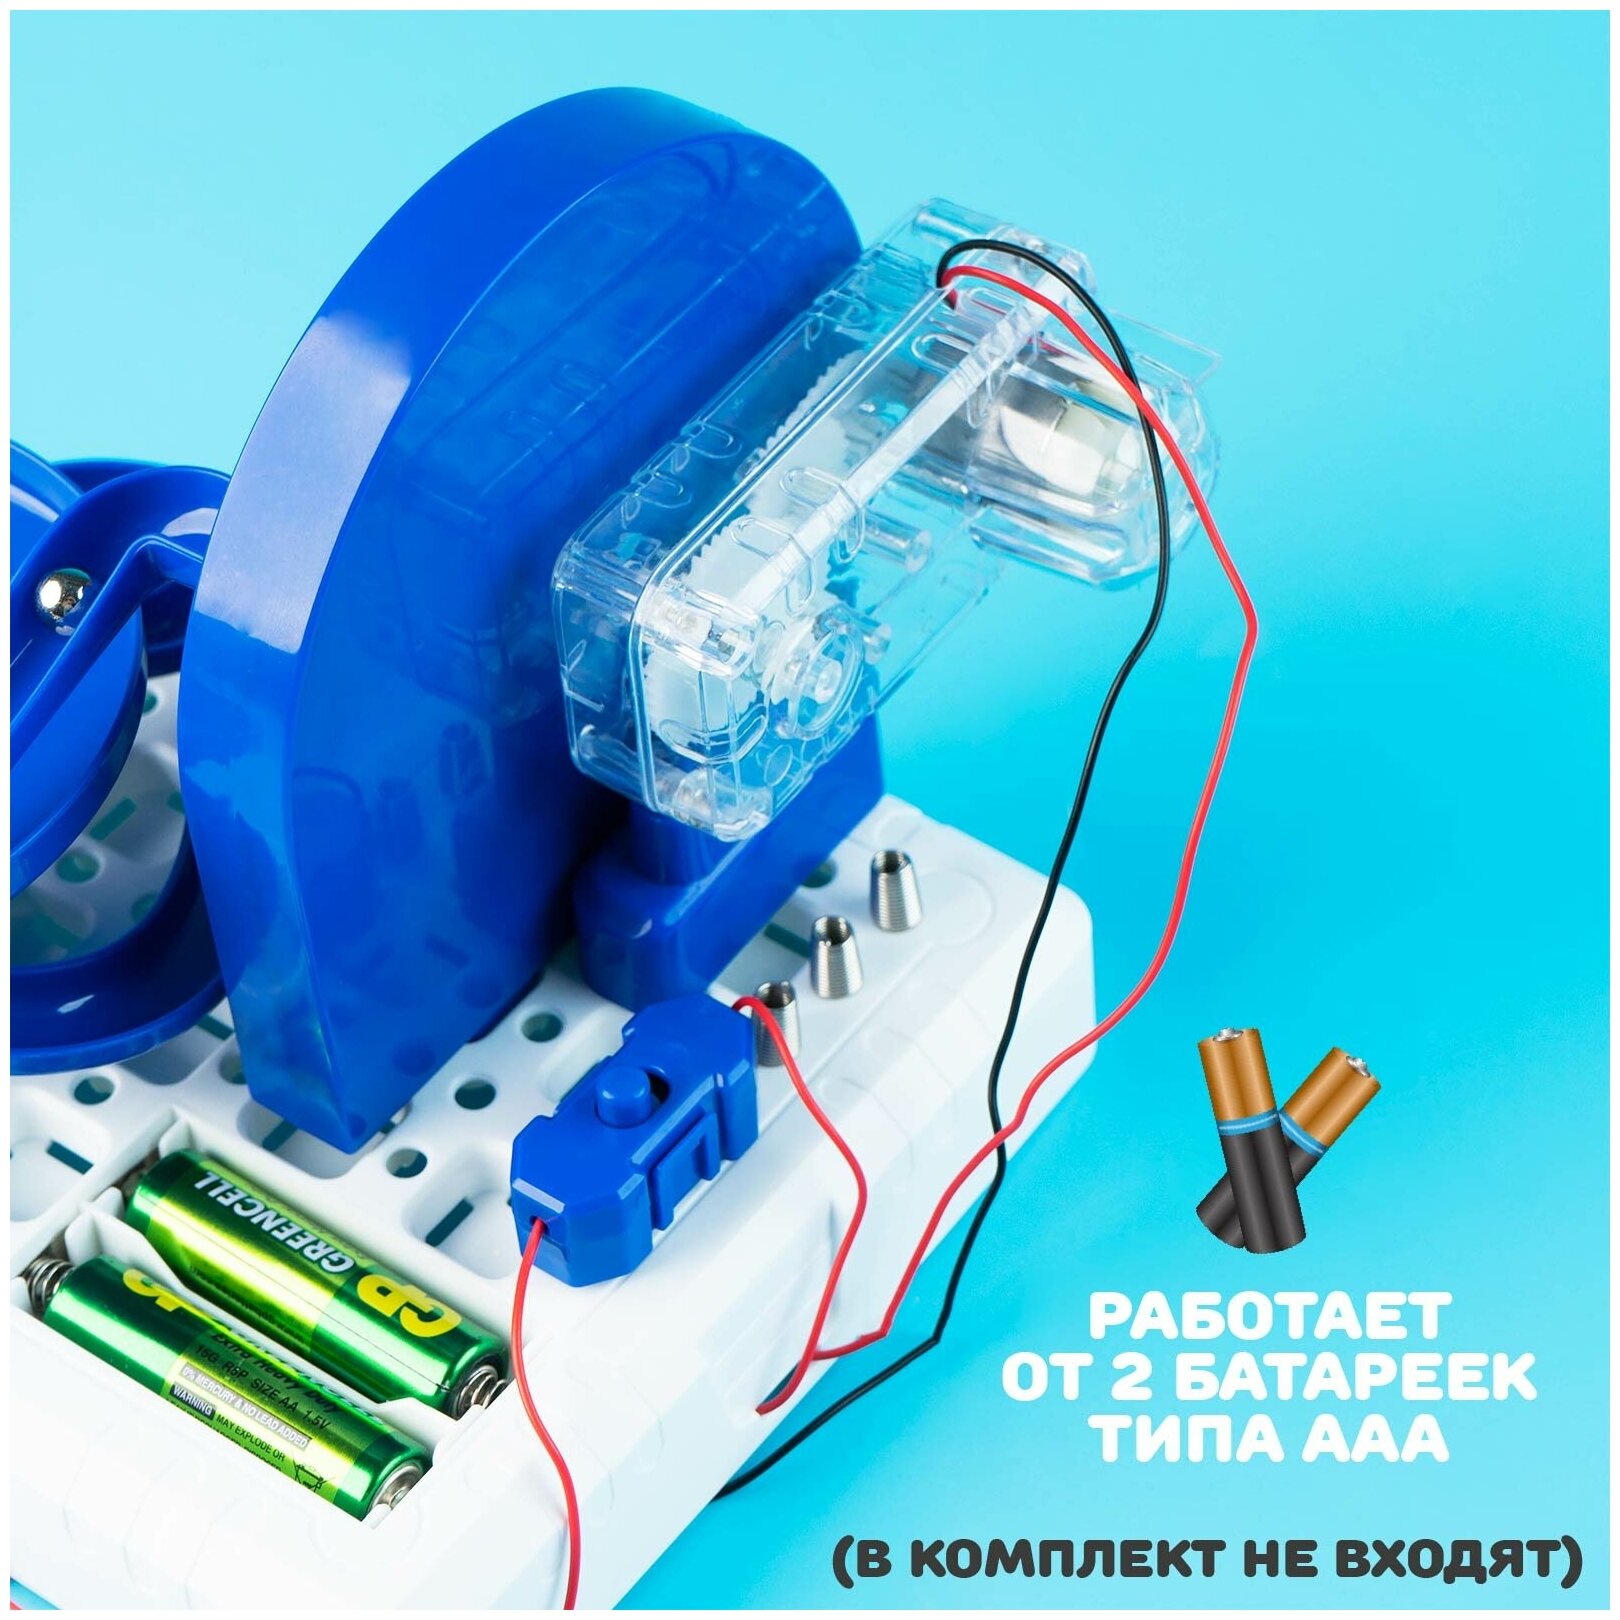 Электронный конструктор "Лабиринтика", сделай сам, работает от батареек, для детей и малышей, цвет синий